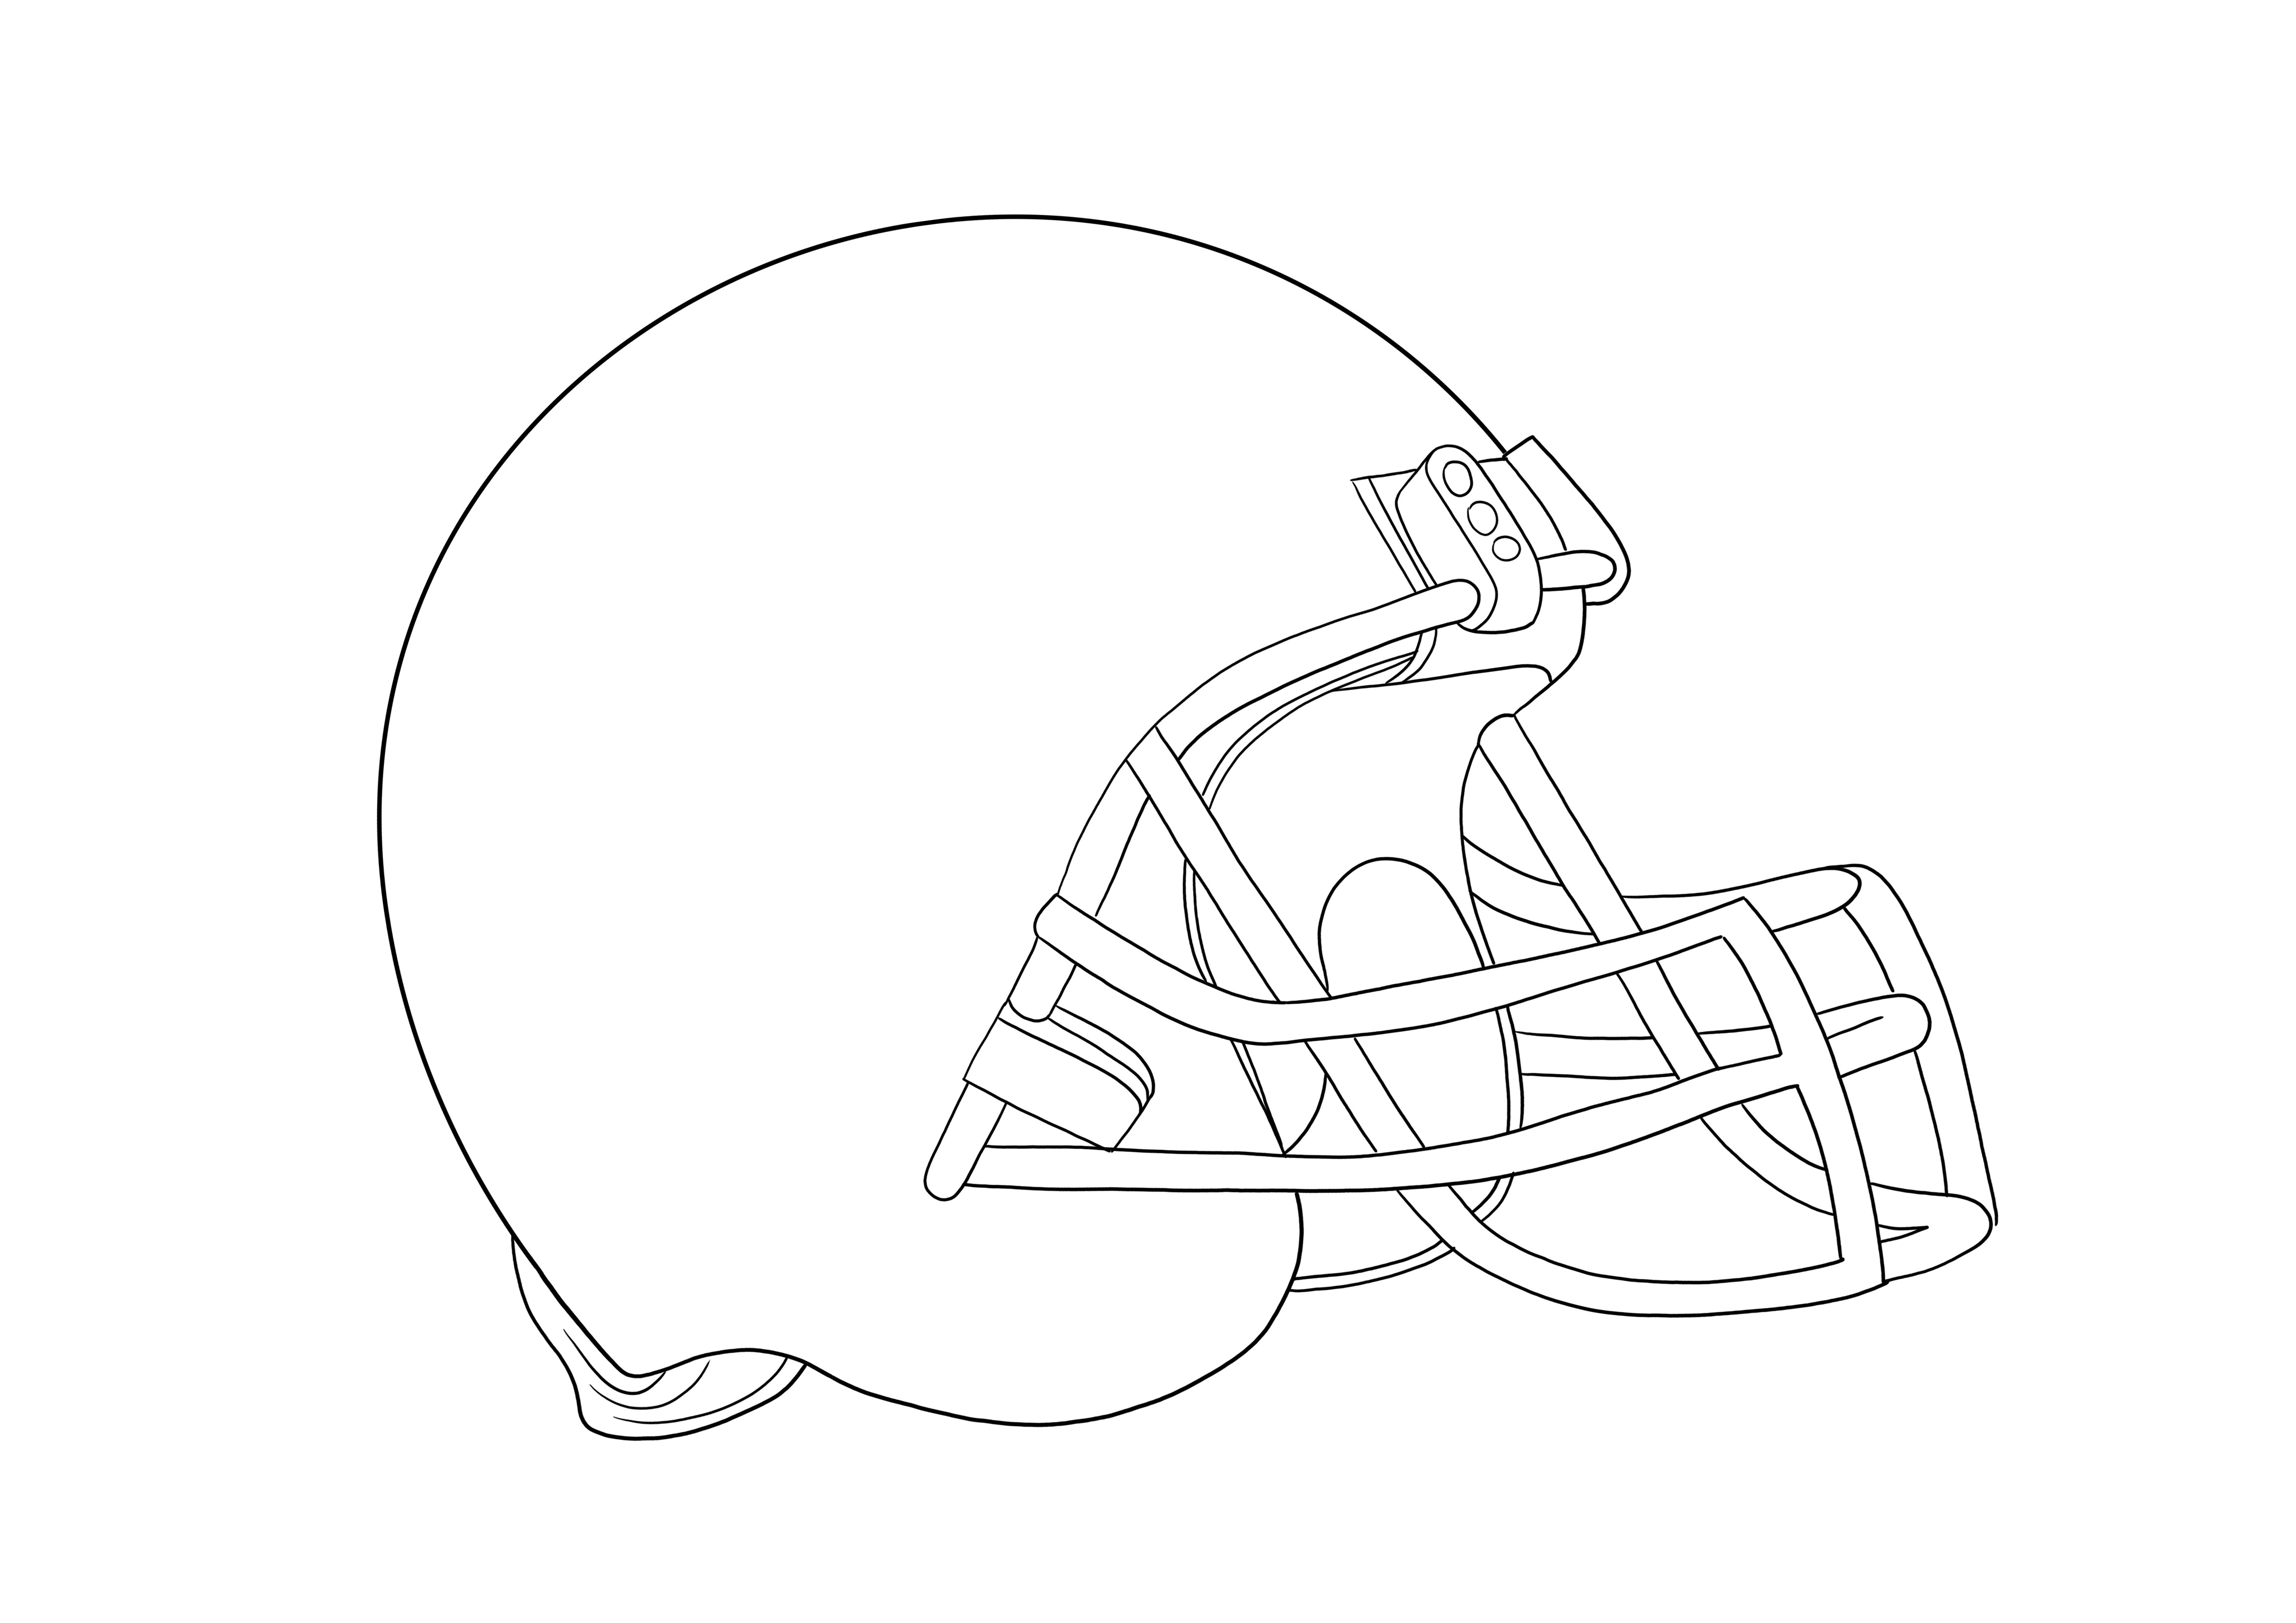 Helm Sepak Bola Amerika dapat dicetak gratis untuk diwarnai bagi pecinta olahraga